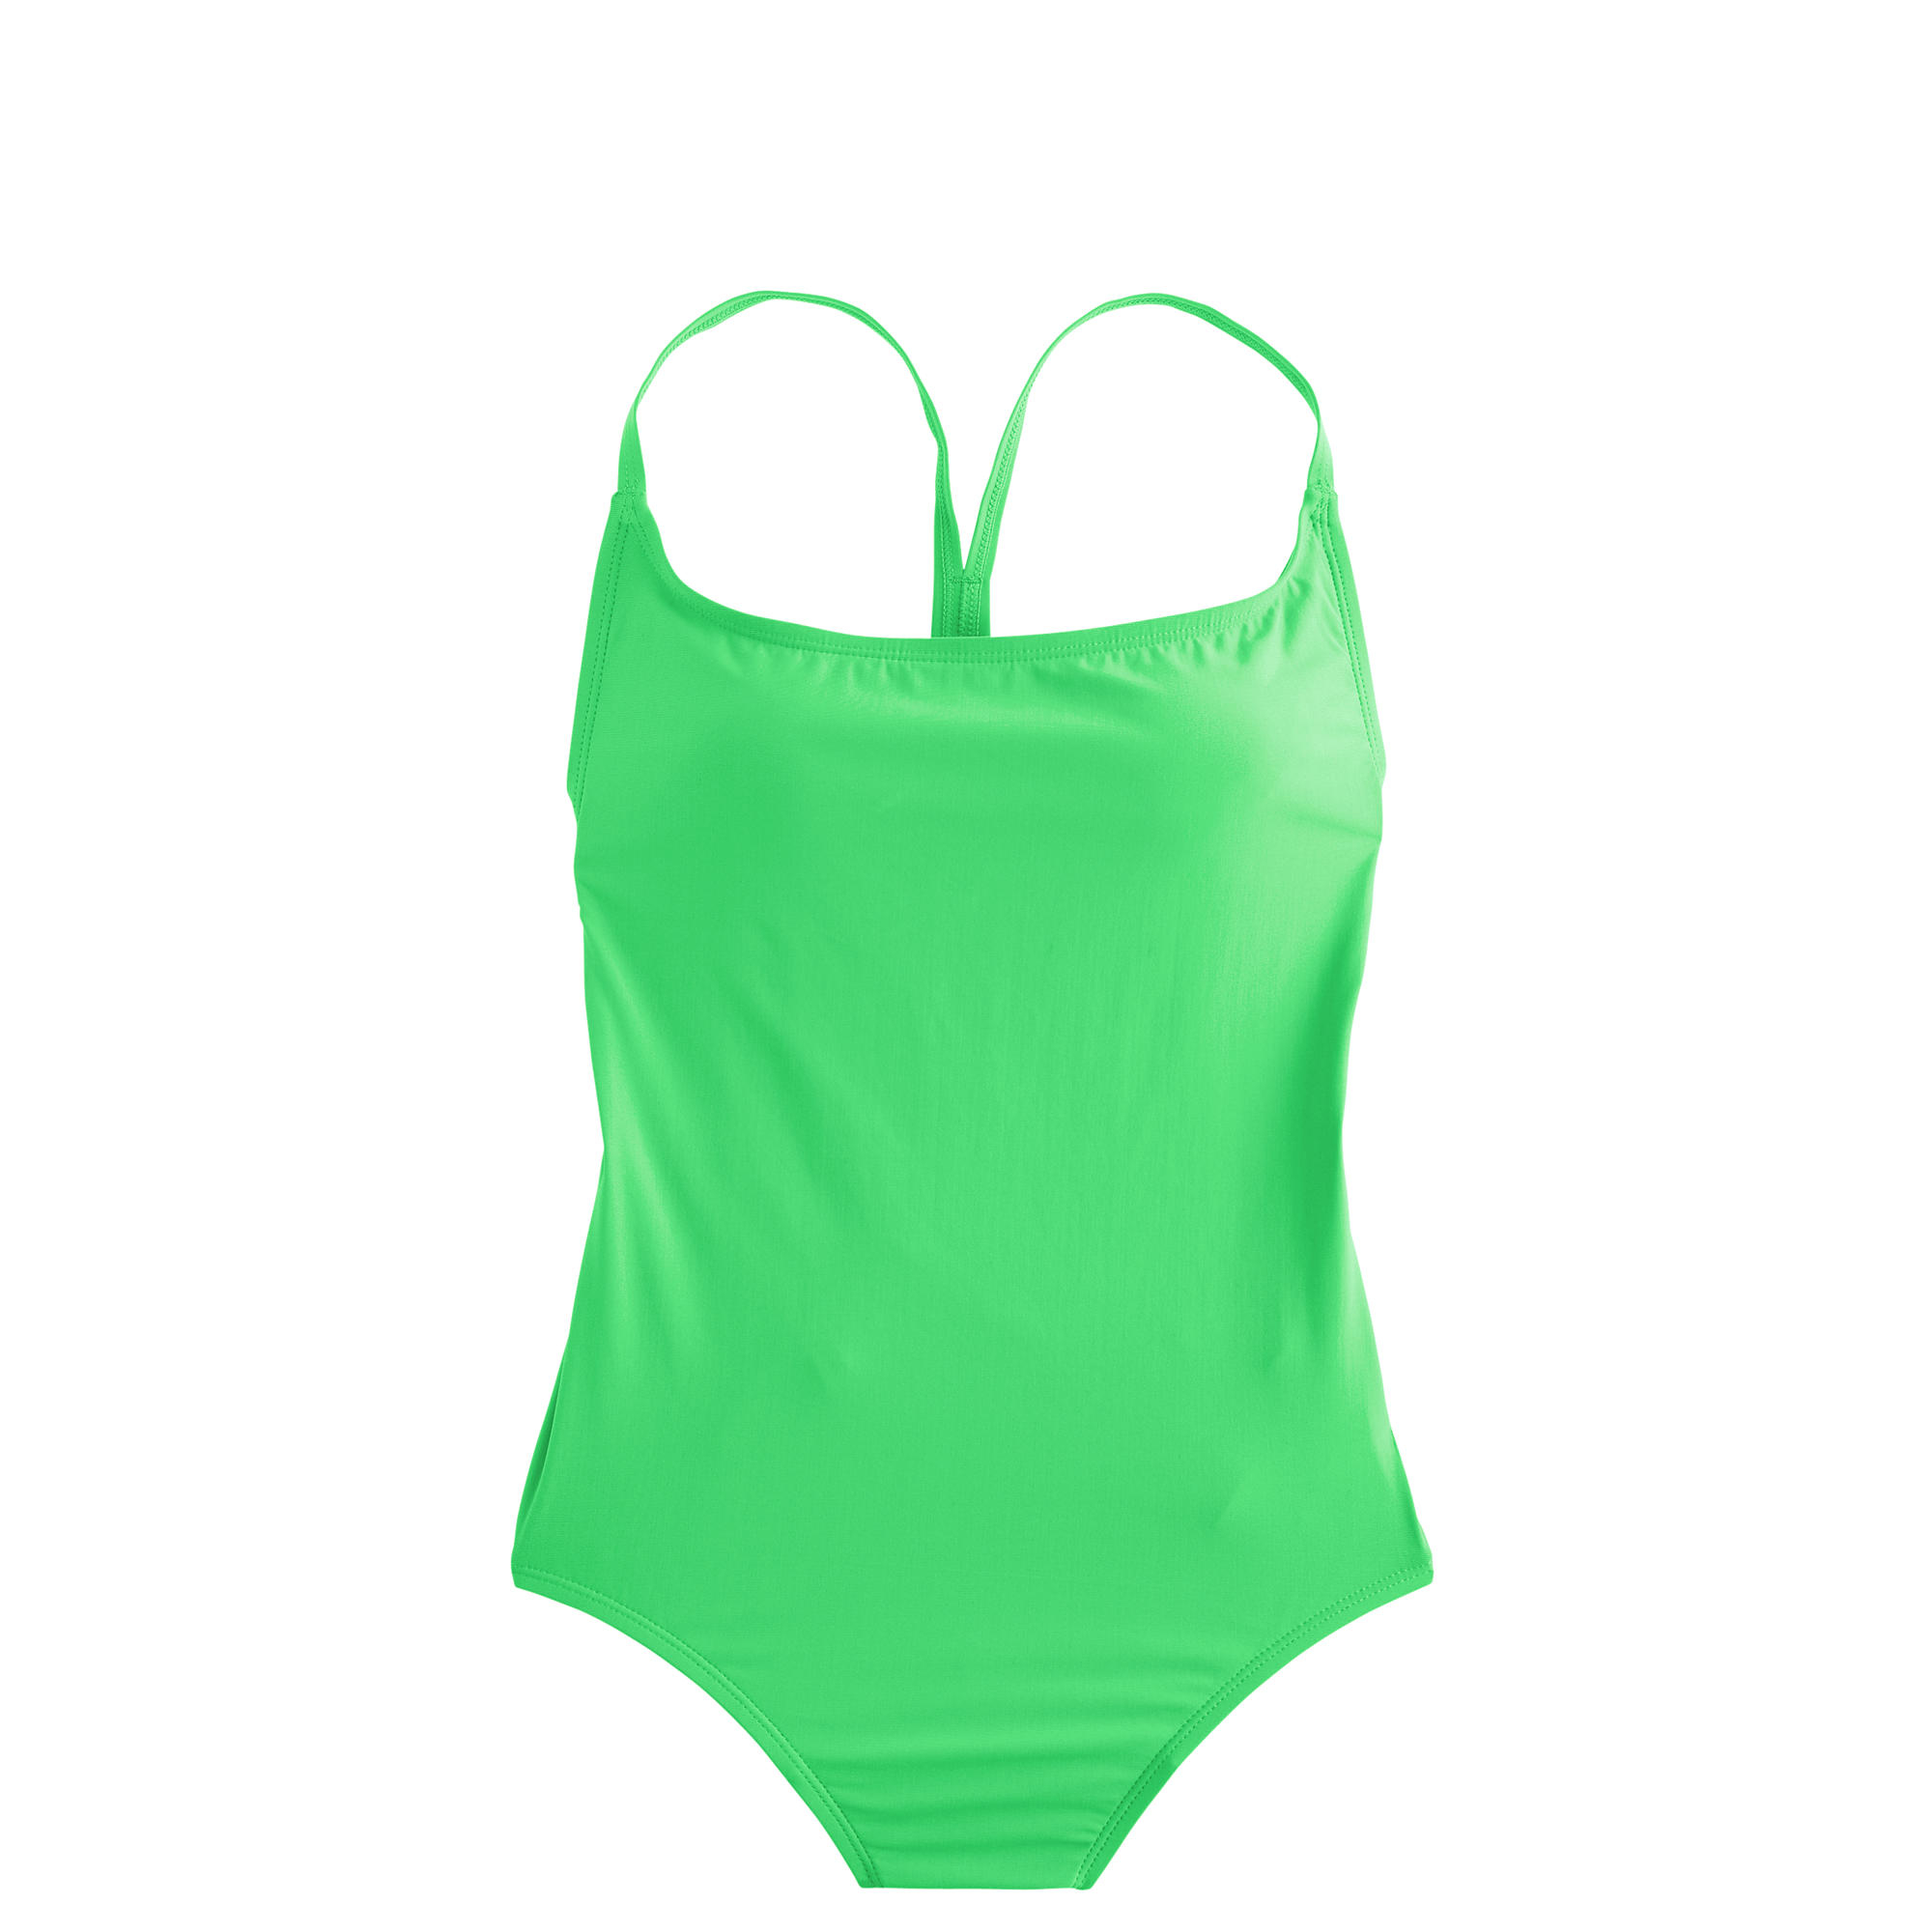 J.crew Cross-back One-piece Swimsuit in Green (neon seamist) | Lyst